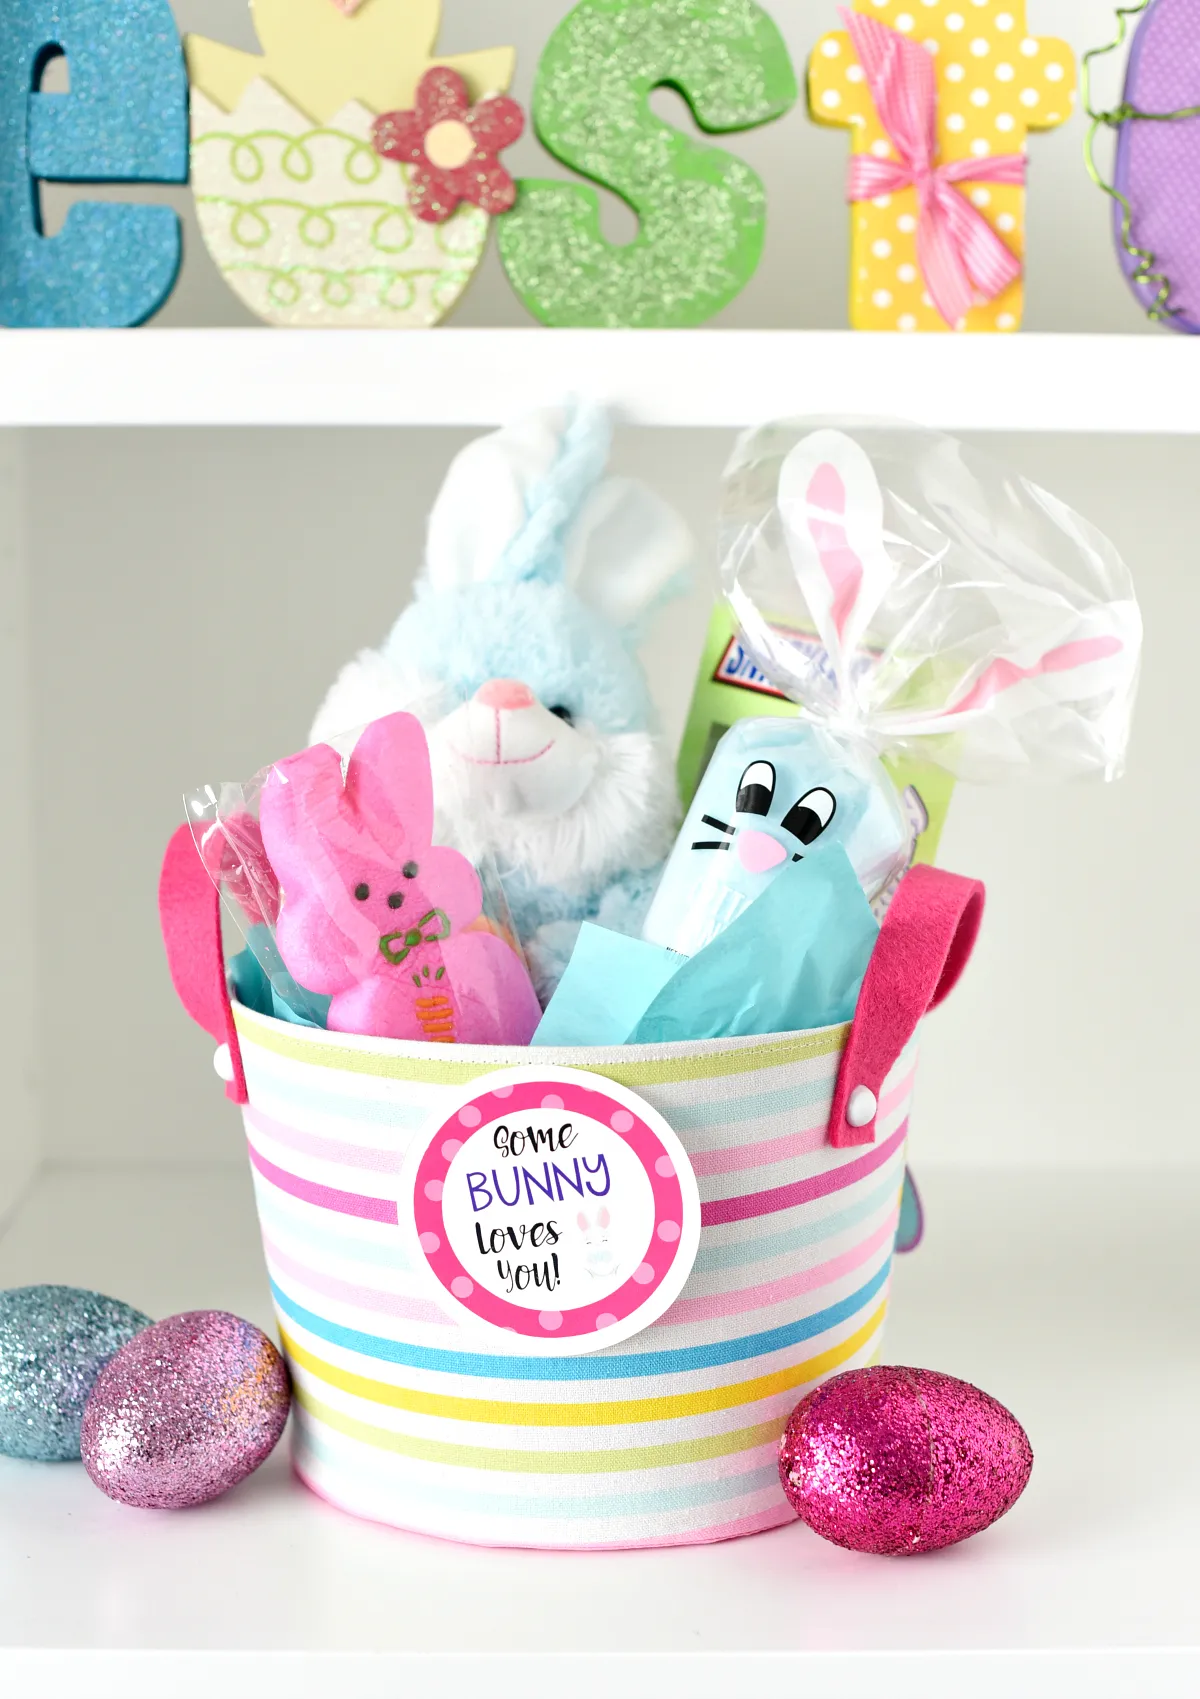 "Somebunny loves you" Easter Basket: